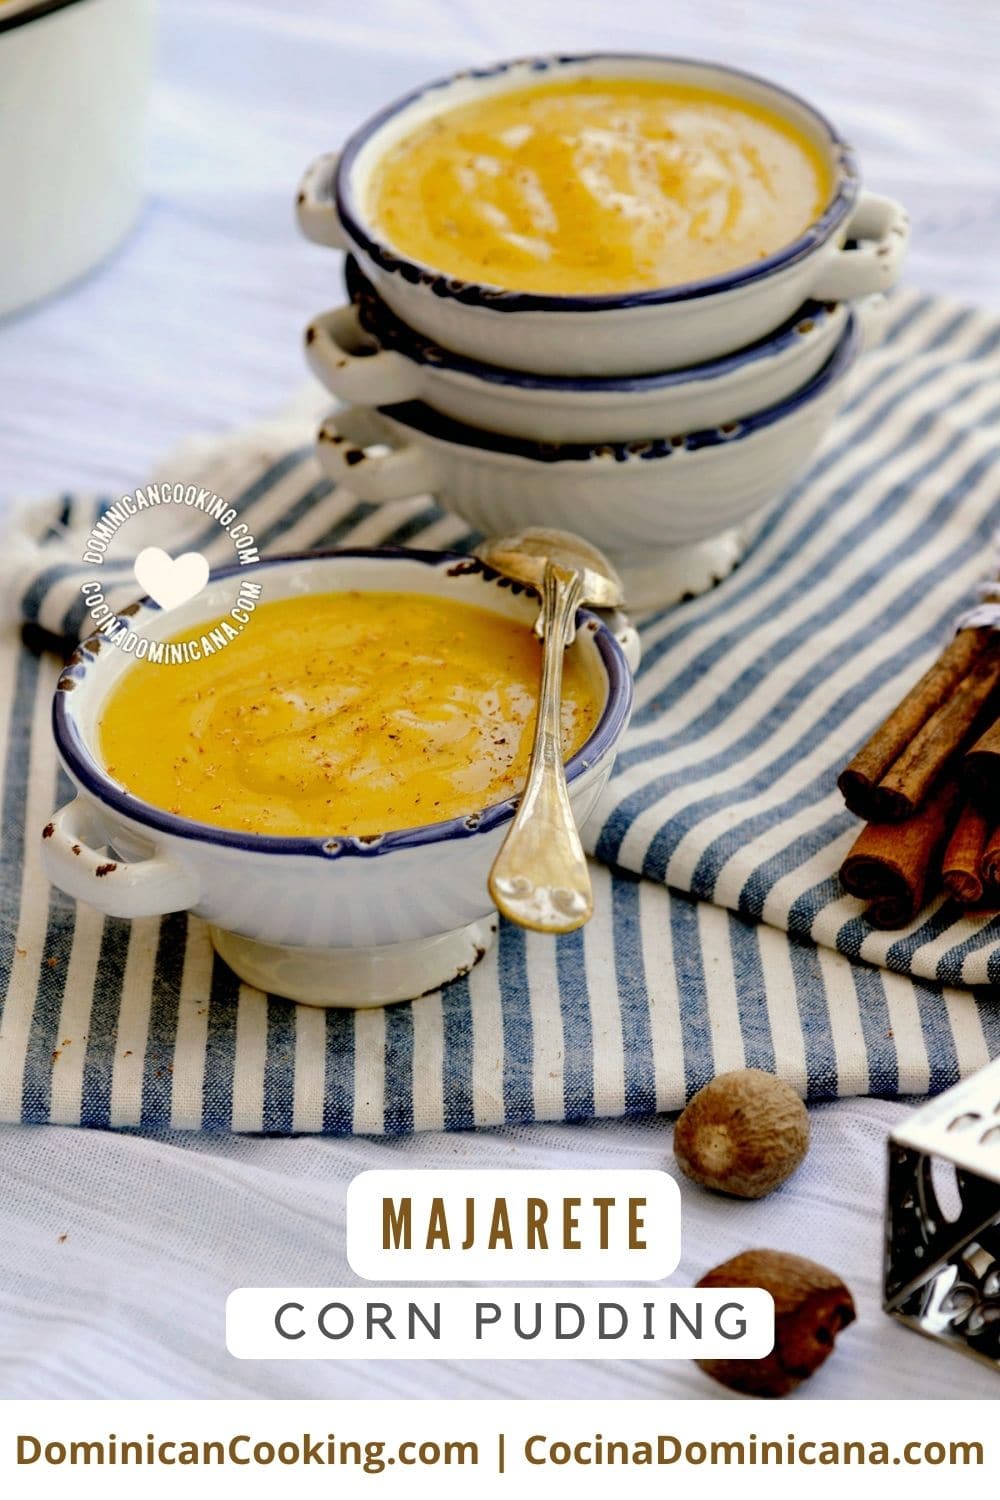 Majarete (corn pudding) recipe.